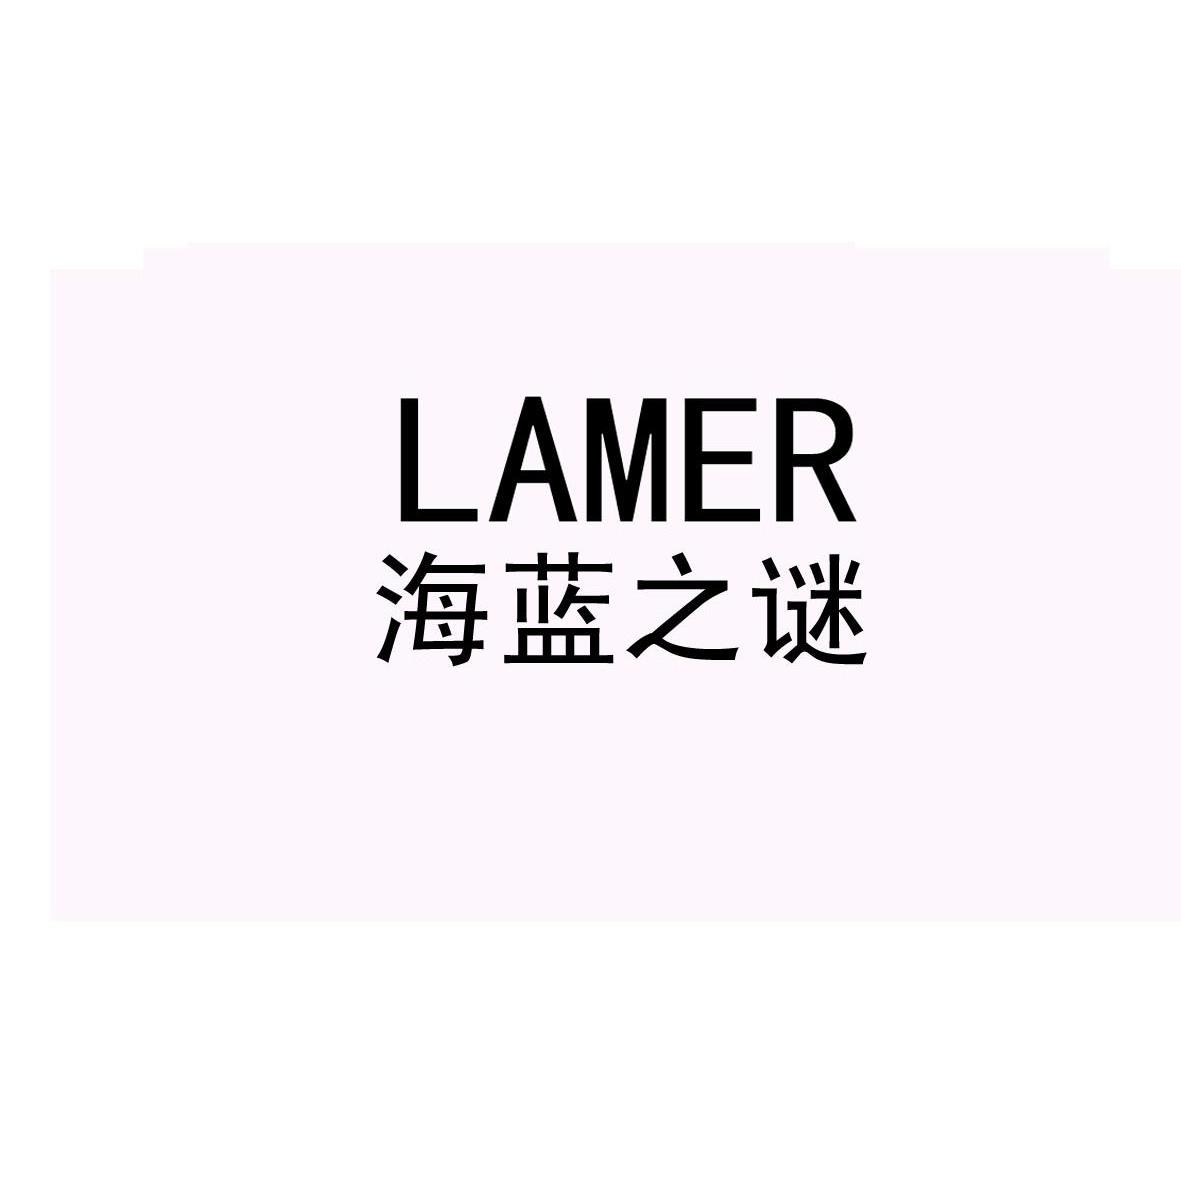 海蓝 之 谜 lamer商标无效